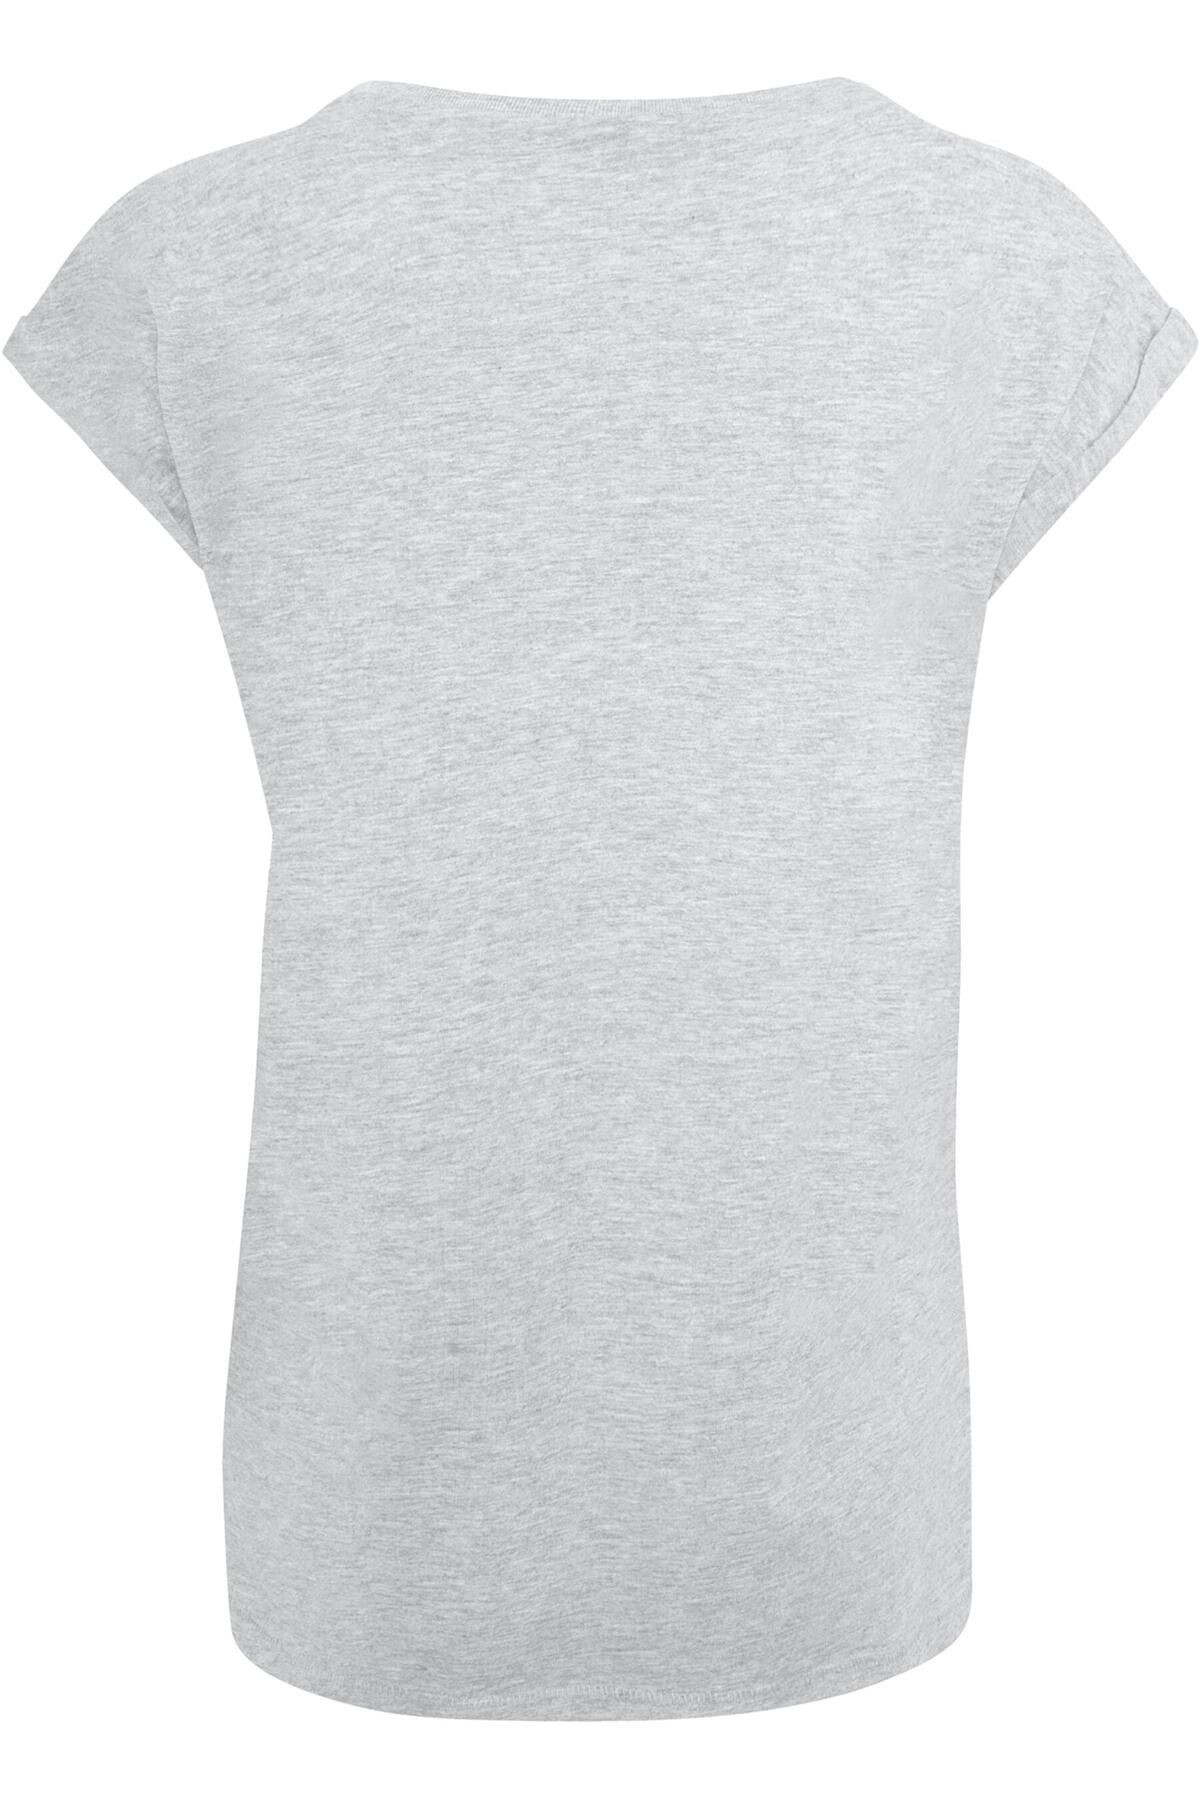 Give Damen Schulterpartie verlängerter Ladies Never Up mit Trendyol Merchcode - T-Shirt